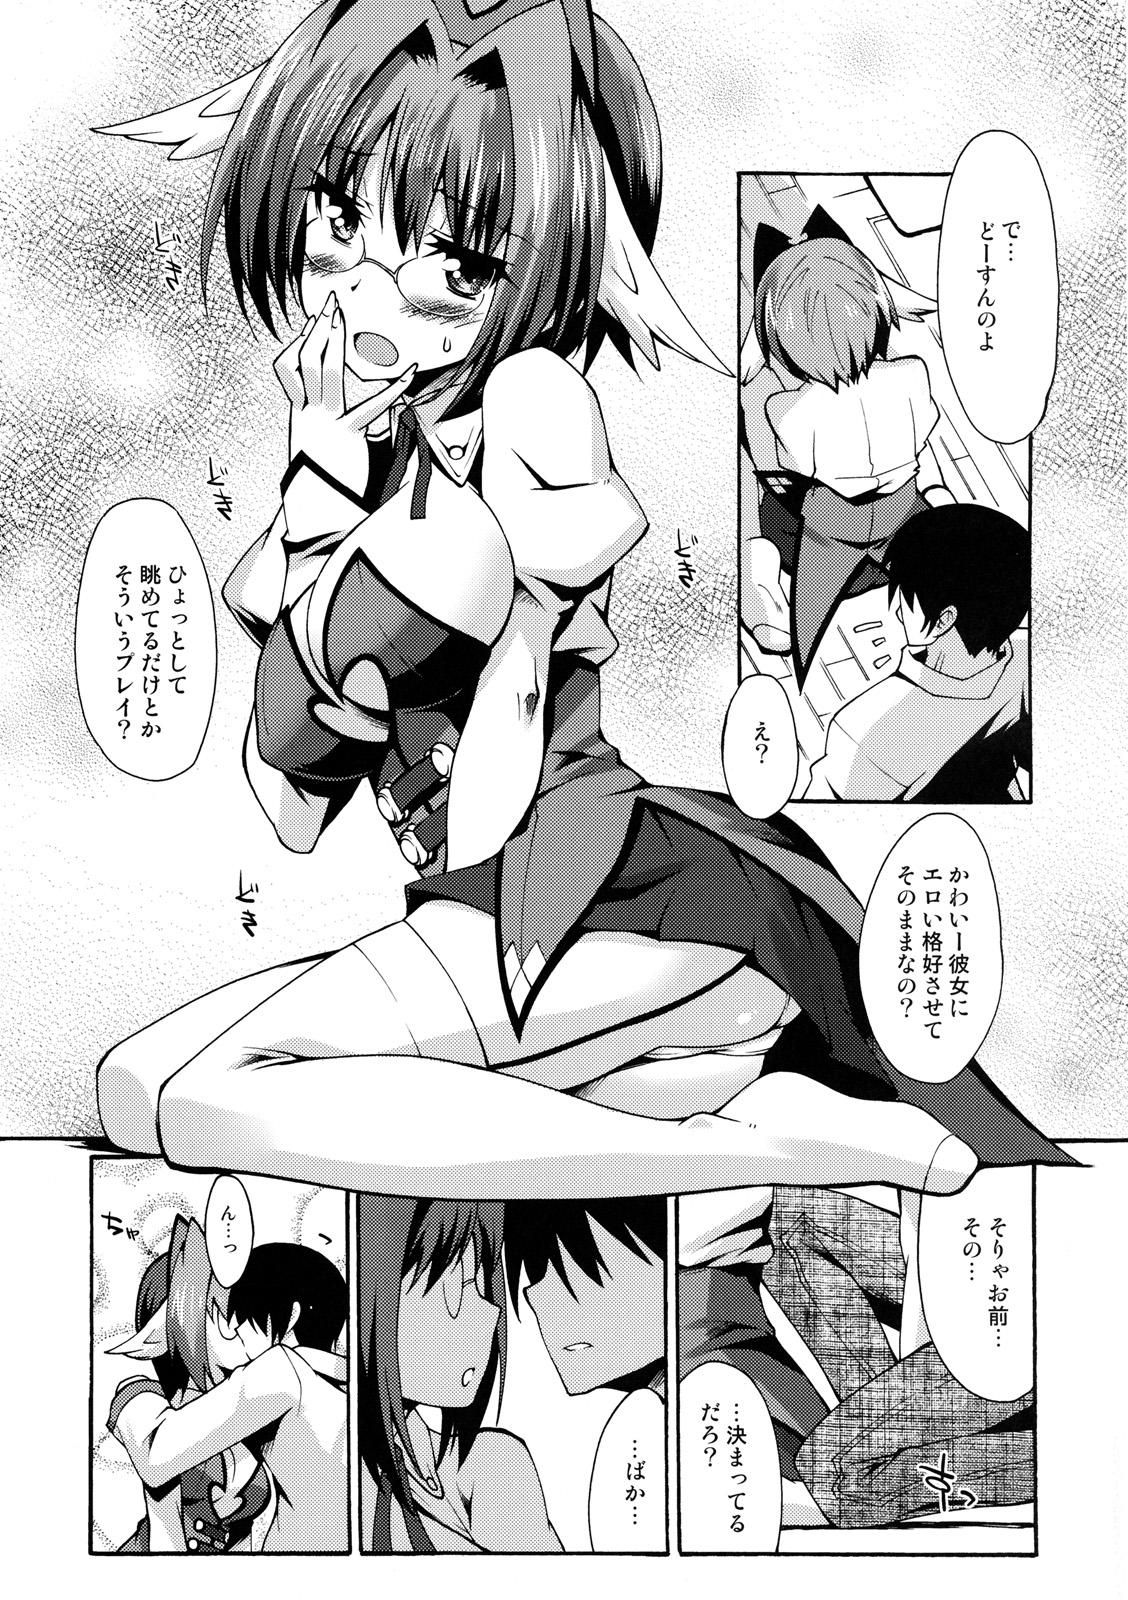 Tranny Sex Shinzui Shinseikatsu Ver. Vol. 2 Porn - Page 8